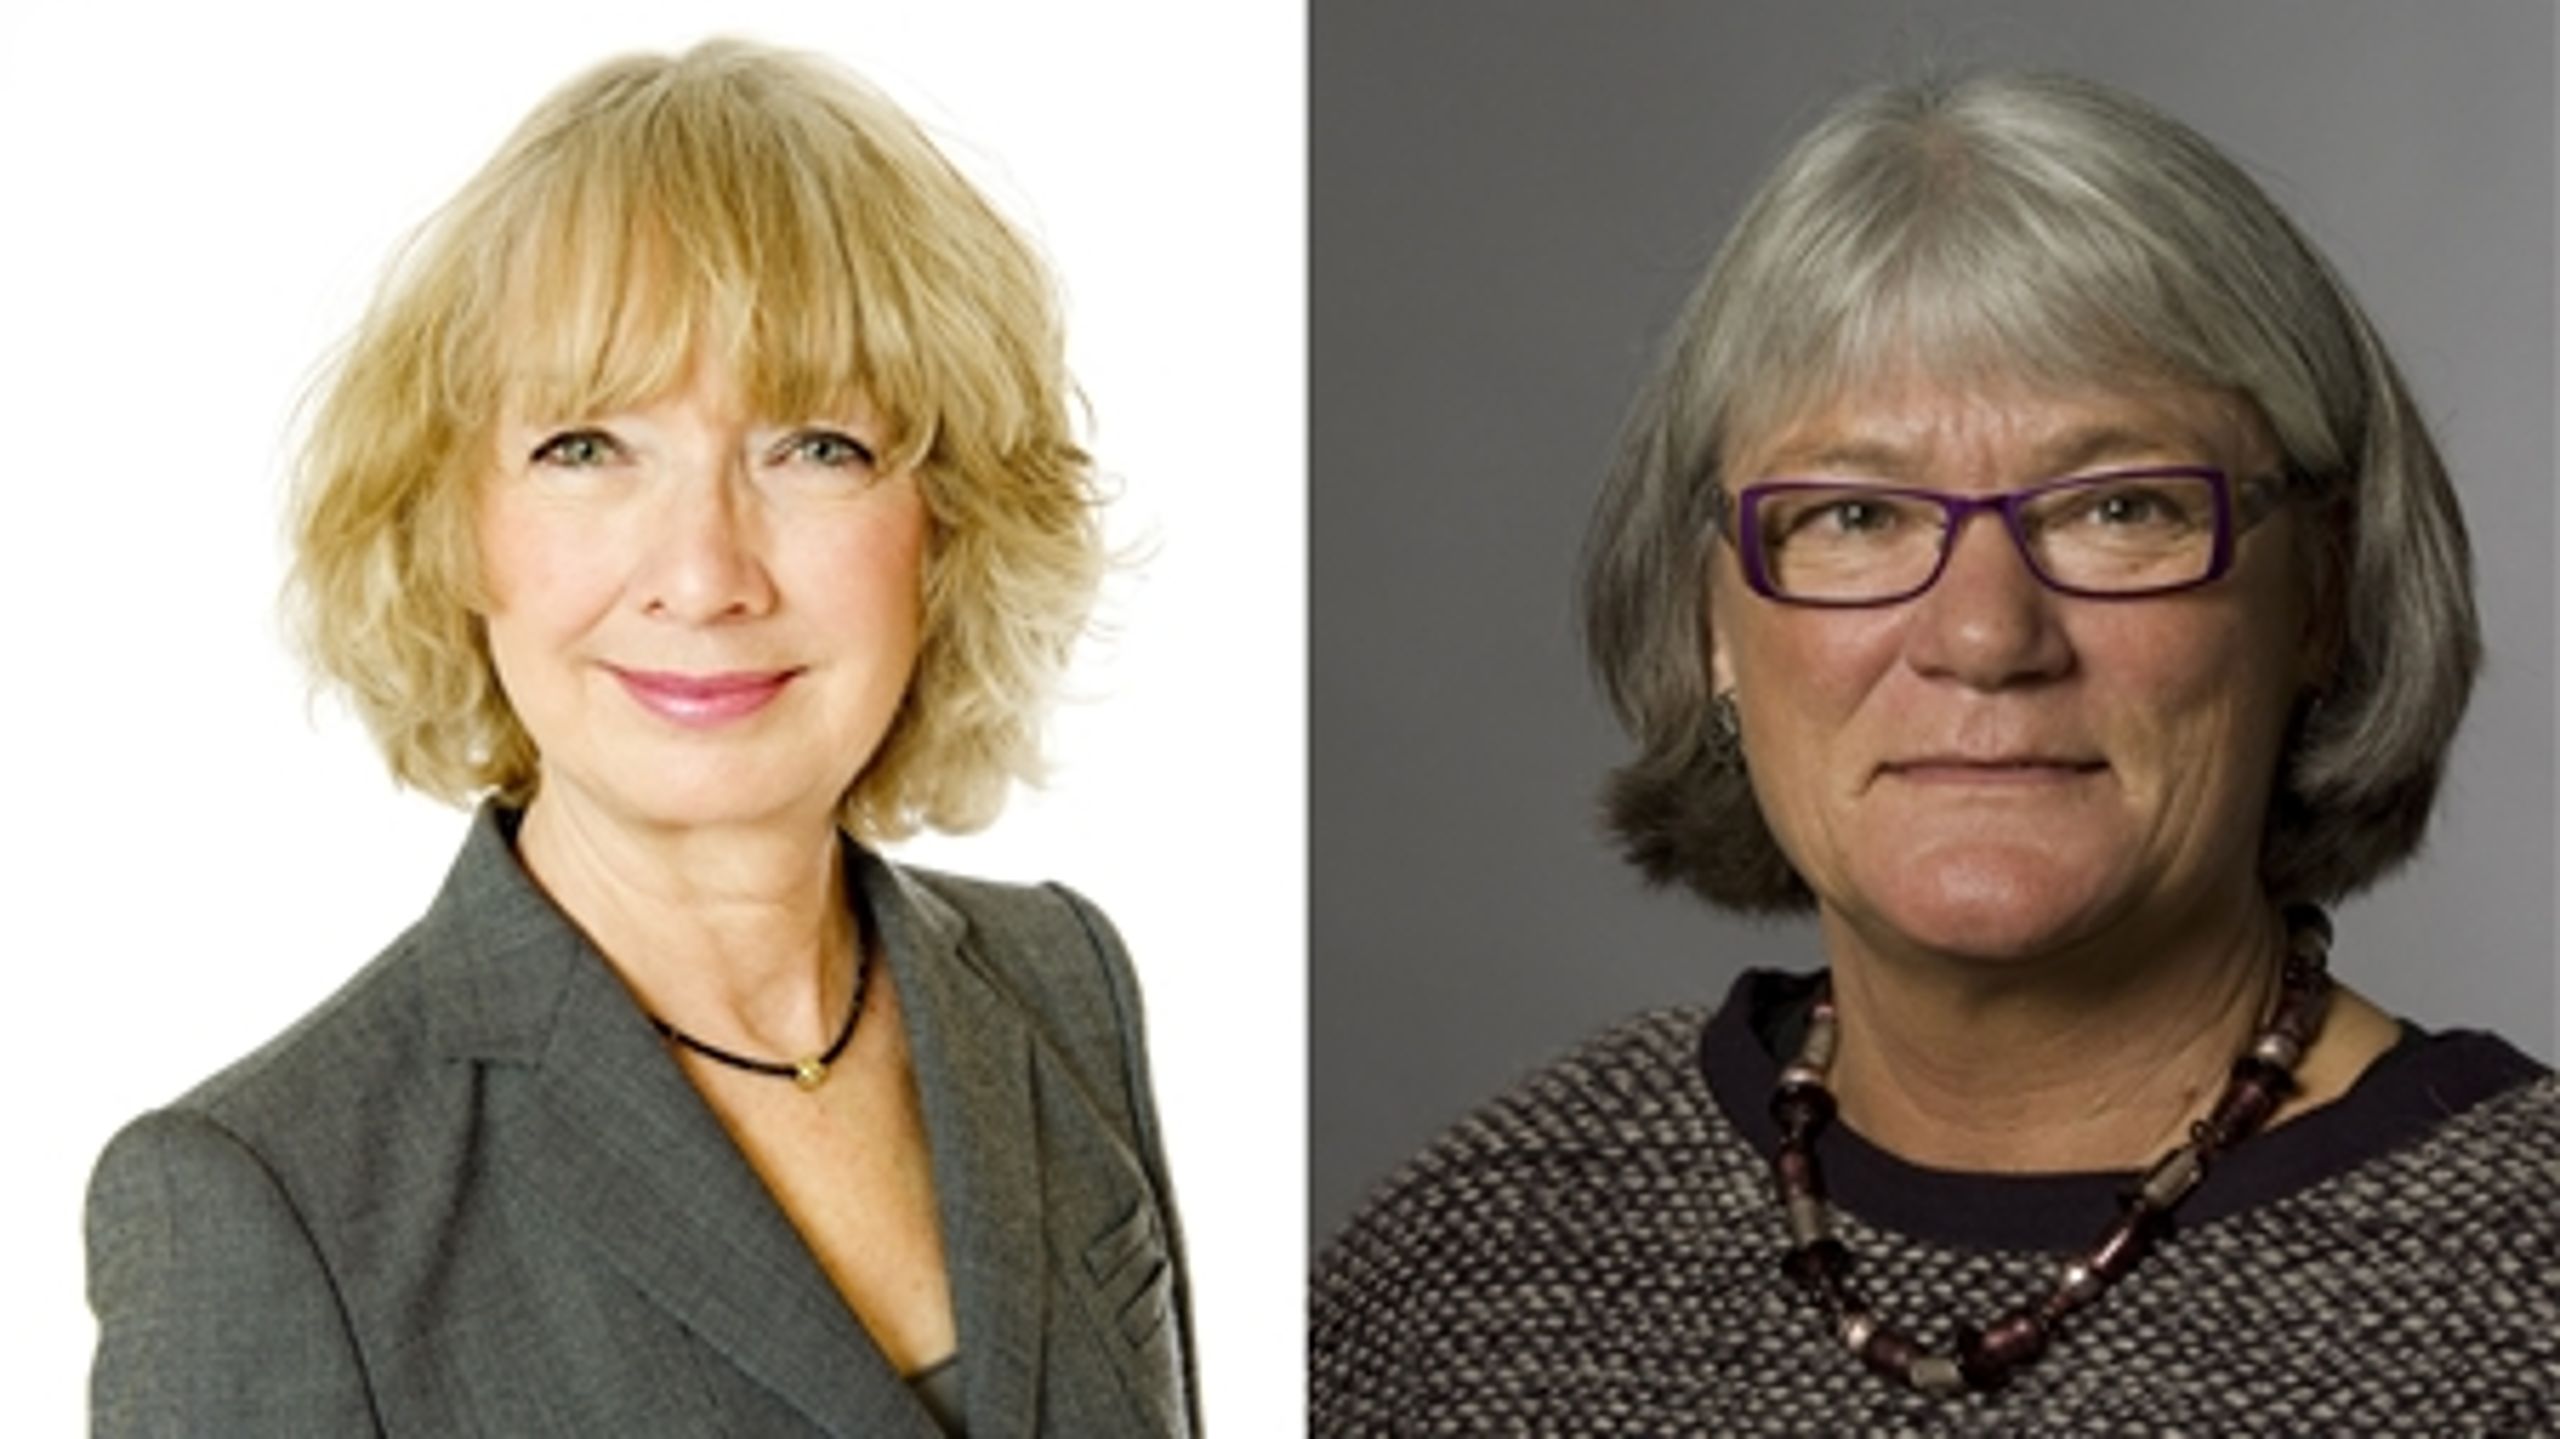 Til venstre: Direktøren i Gigtforeningen, Lene Witte. Til højre: Forbundssekretæren i FOA, Inger Bolwinkel.
 